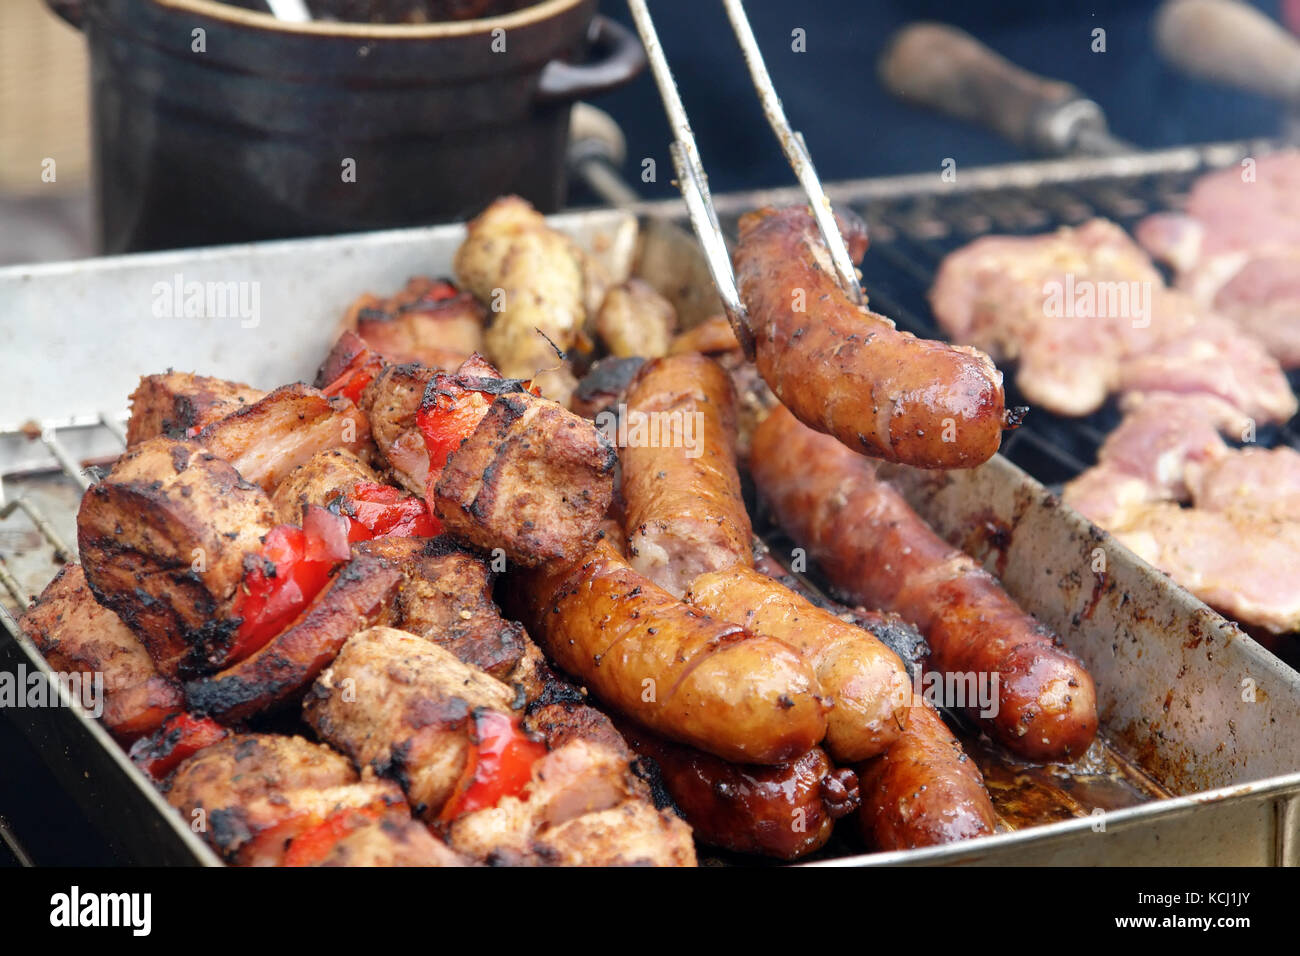 Les viandes rouges grillées, des brochettes de saucisses et brochettes au barbecue Banque D'Images